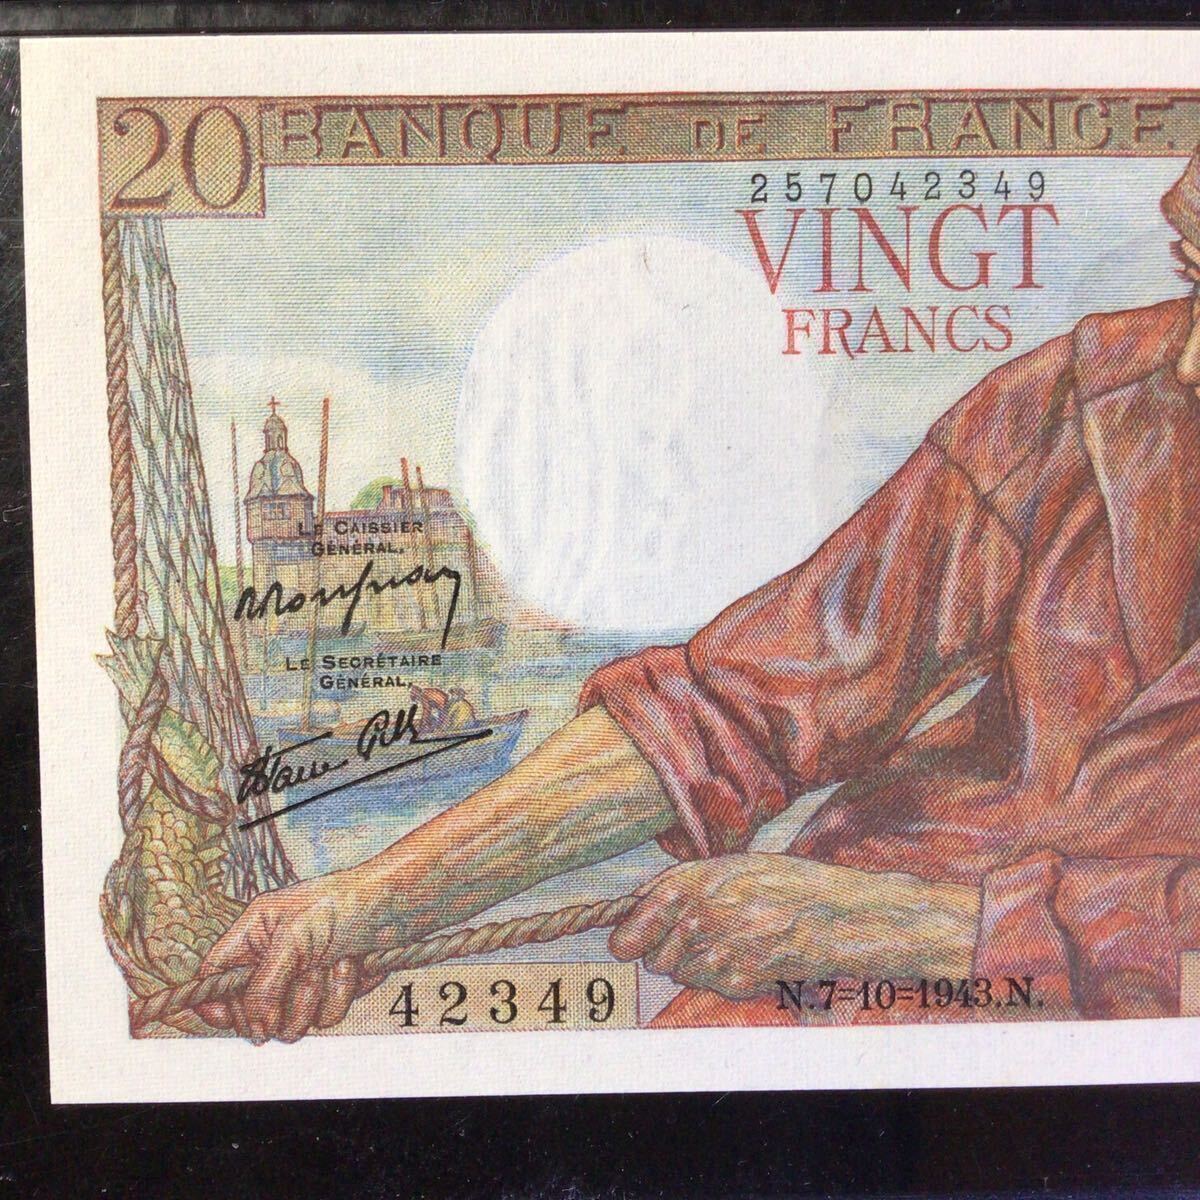 World Banknote Grading FRANCE《Banque de France》20 Francs【1943】『PMG Grading Gem Uncirculated 65 EPQ』_画像4